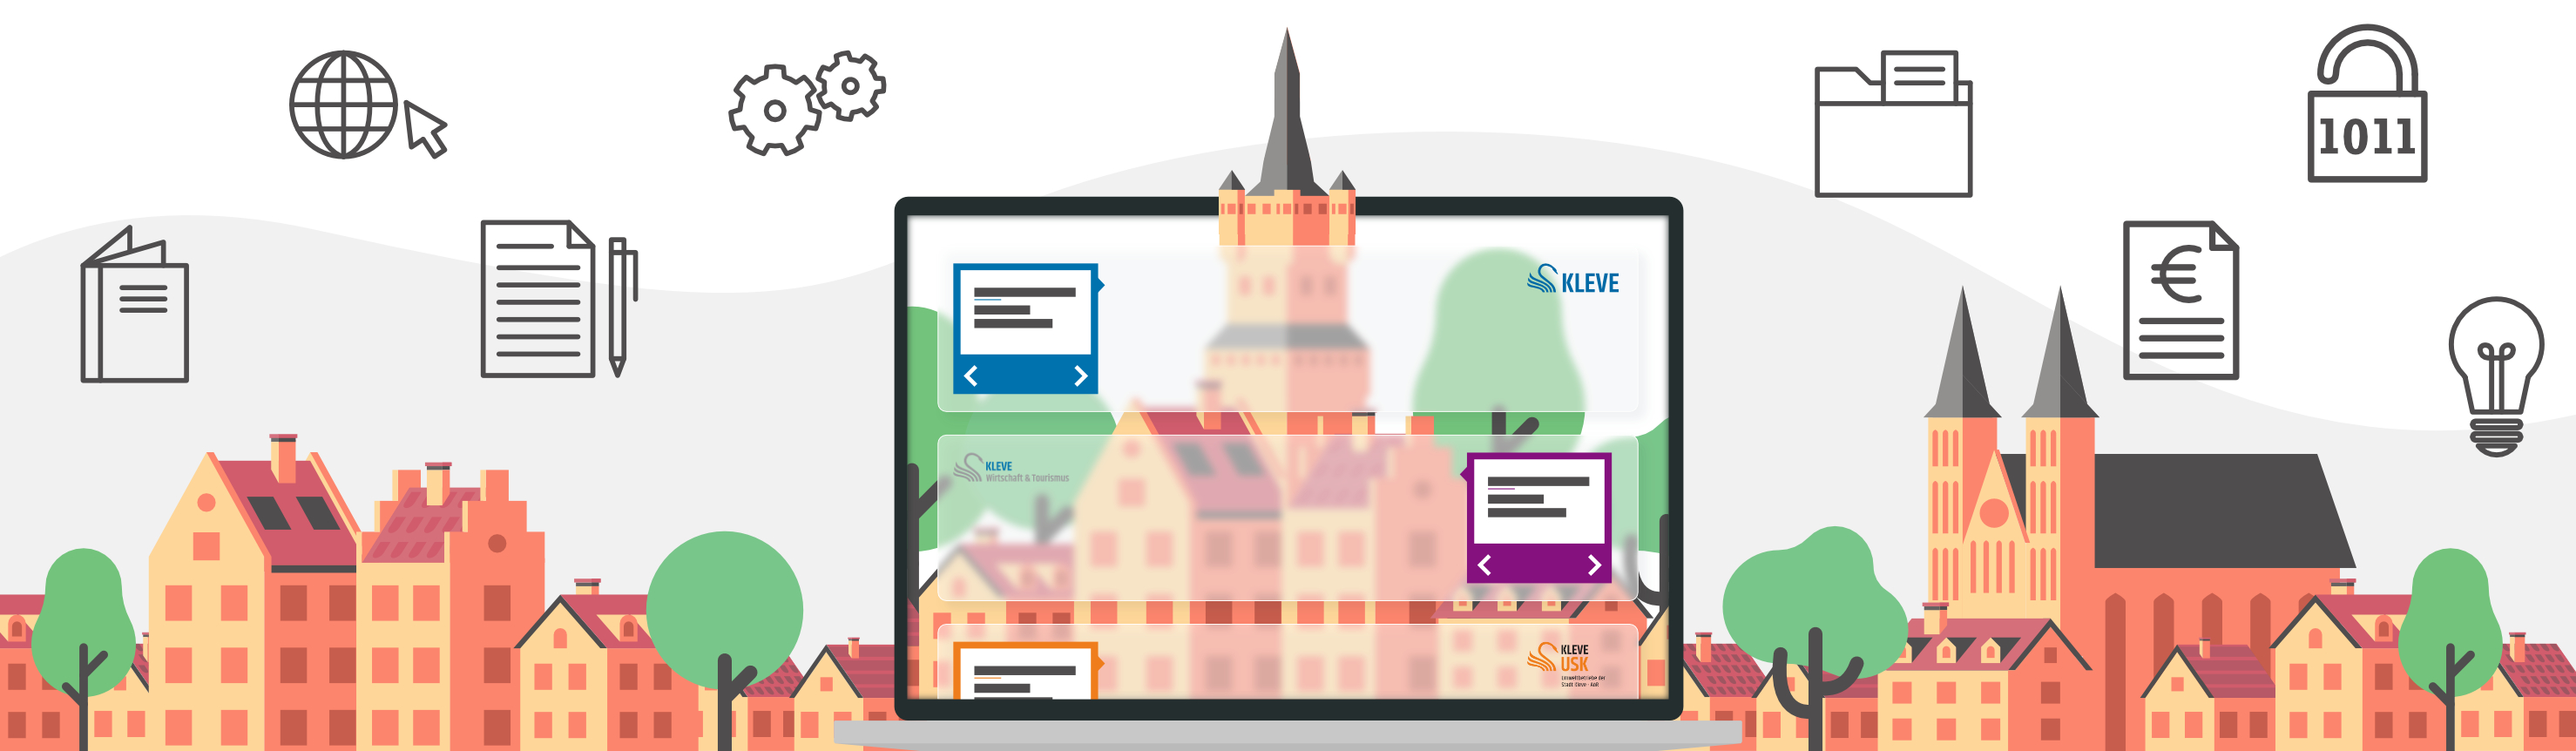 Eine Illustration der Klever Skyline mit einer abstrahierten Darstellung der neuen Internetseite